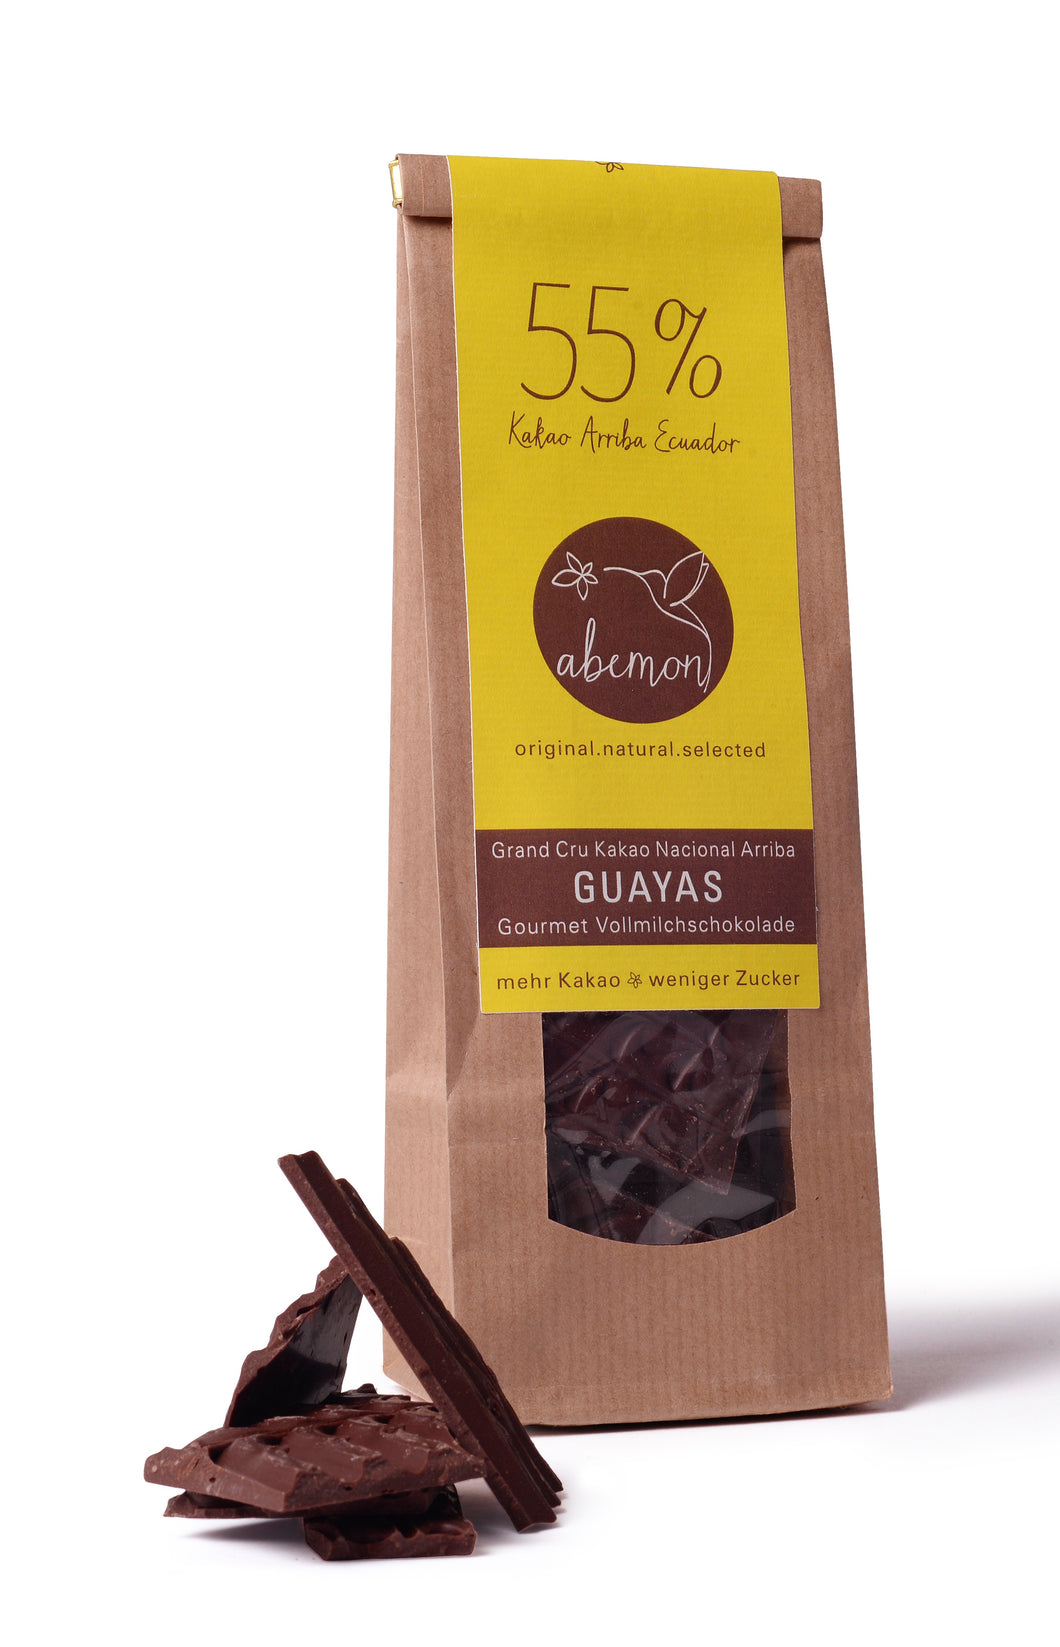 Gourmet Vollmilchschokolade 55% Kakao Nacional Arriba GUAYAS